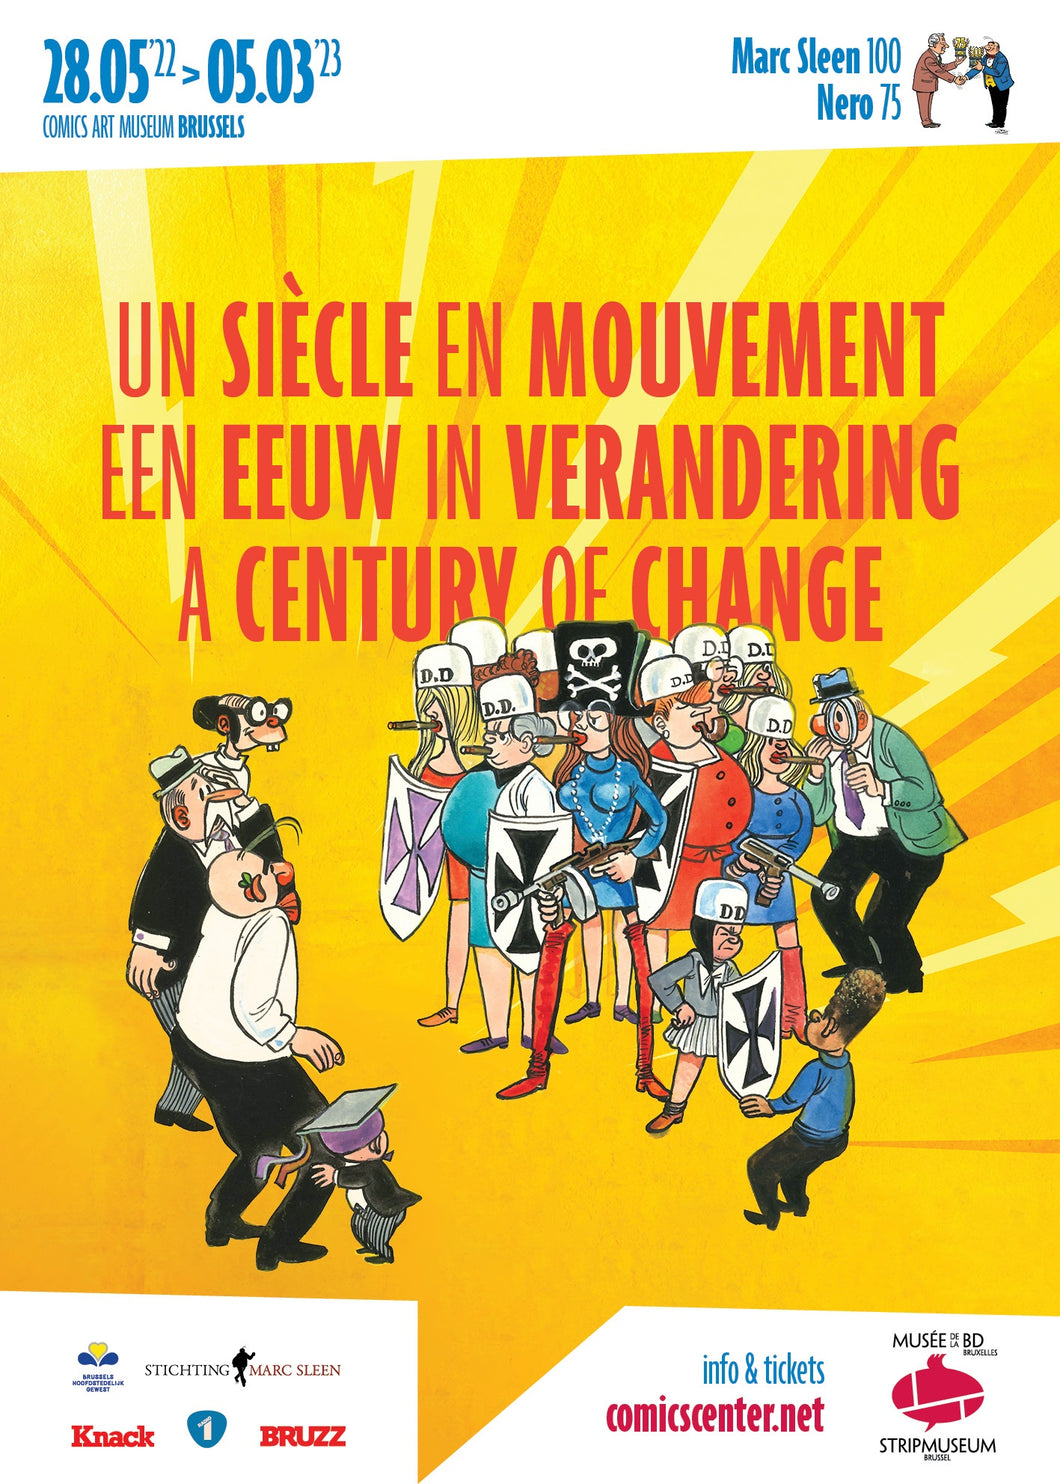 Marc Sleen - Expo Catalogus - Een eeuw in verandering